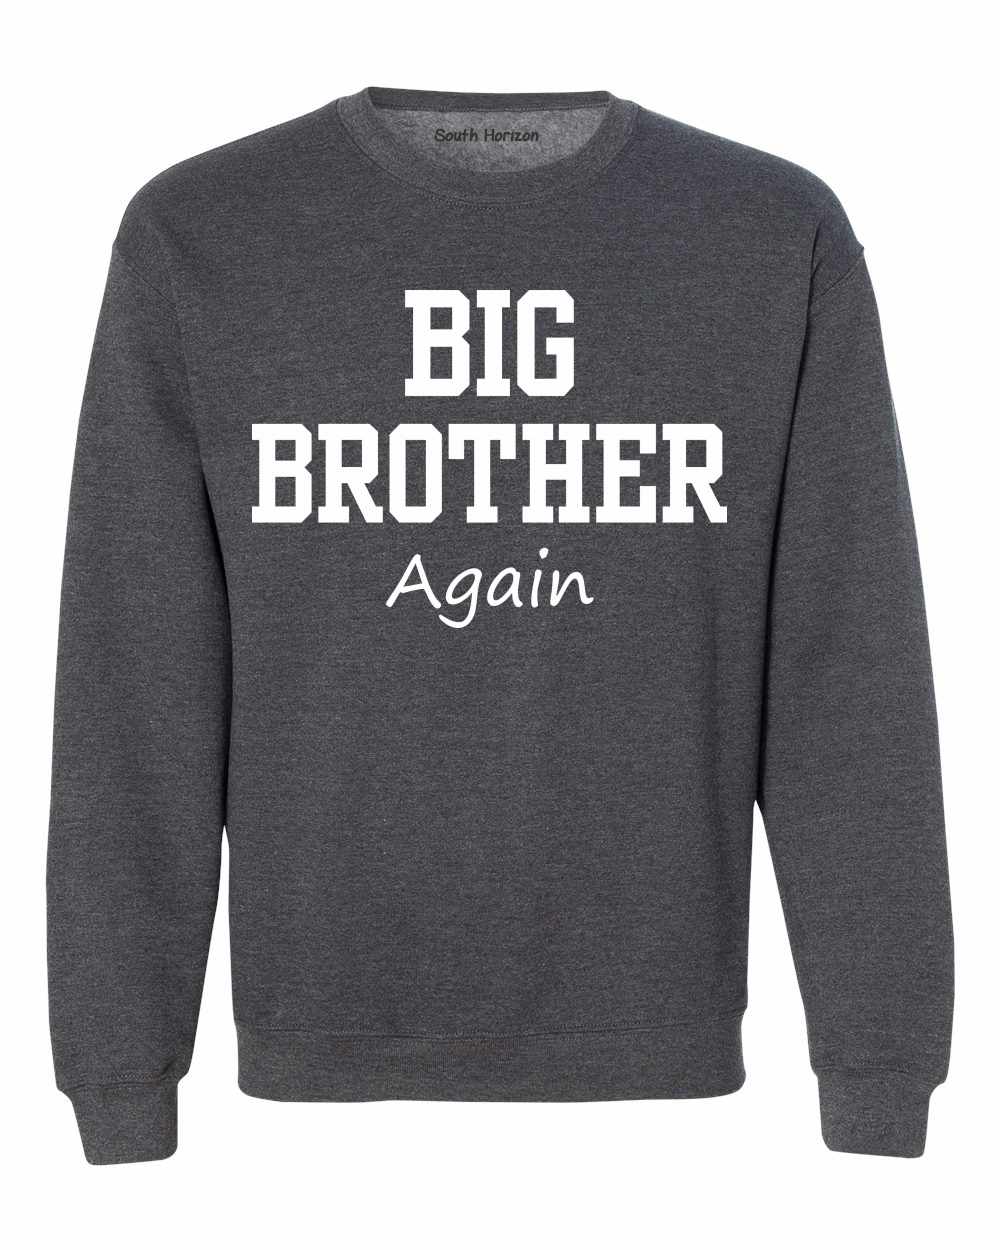 Big Brother Again on SweatShirt (#1133-11)